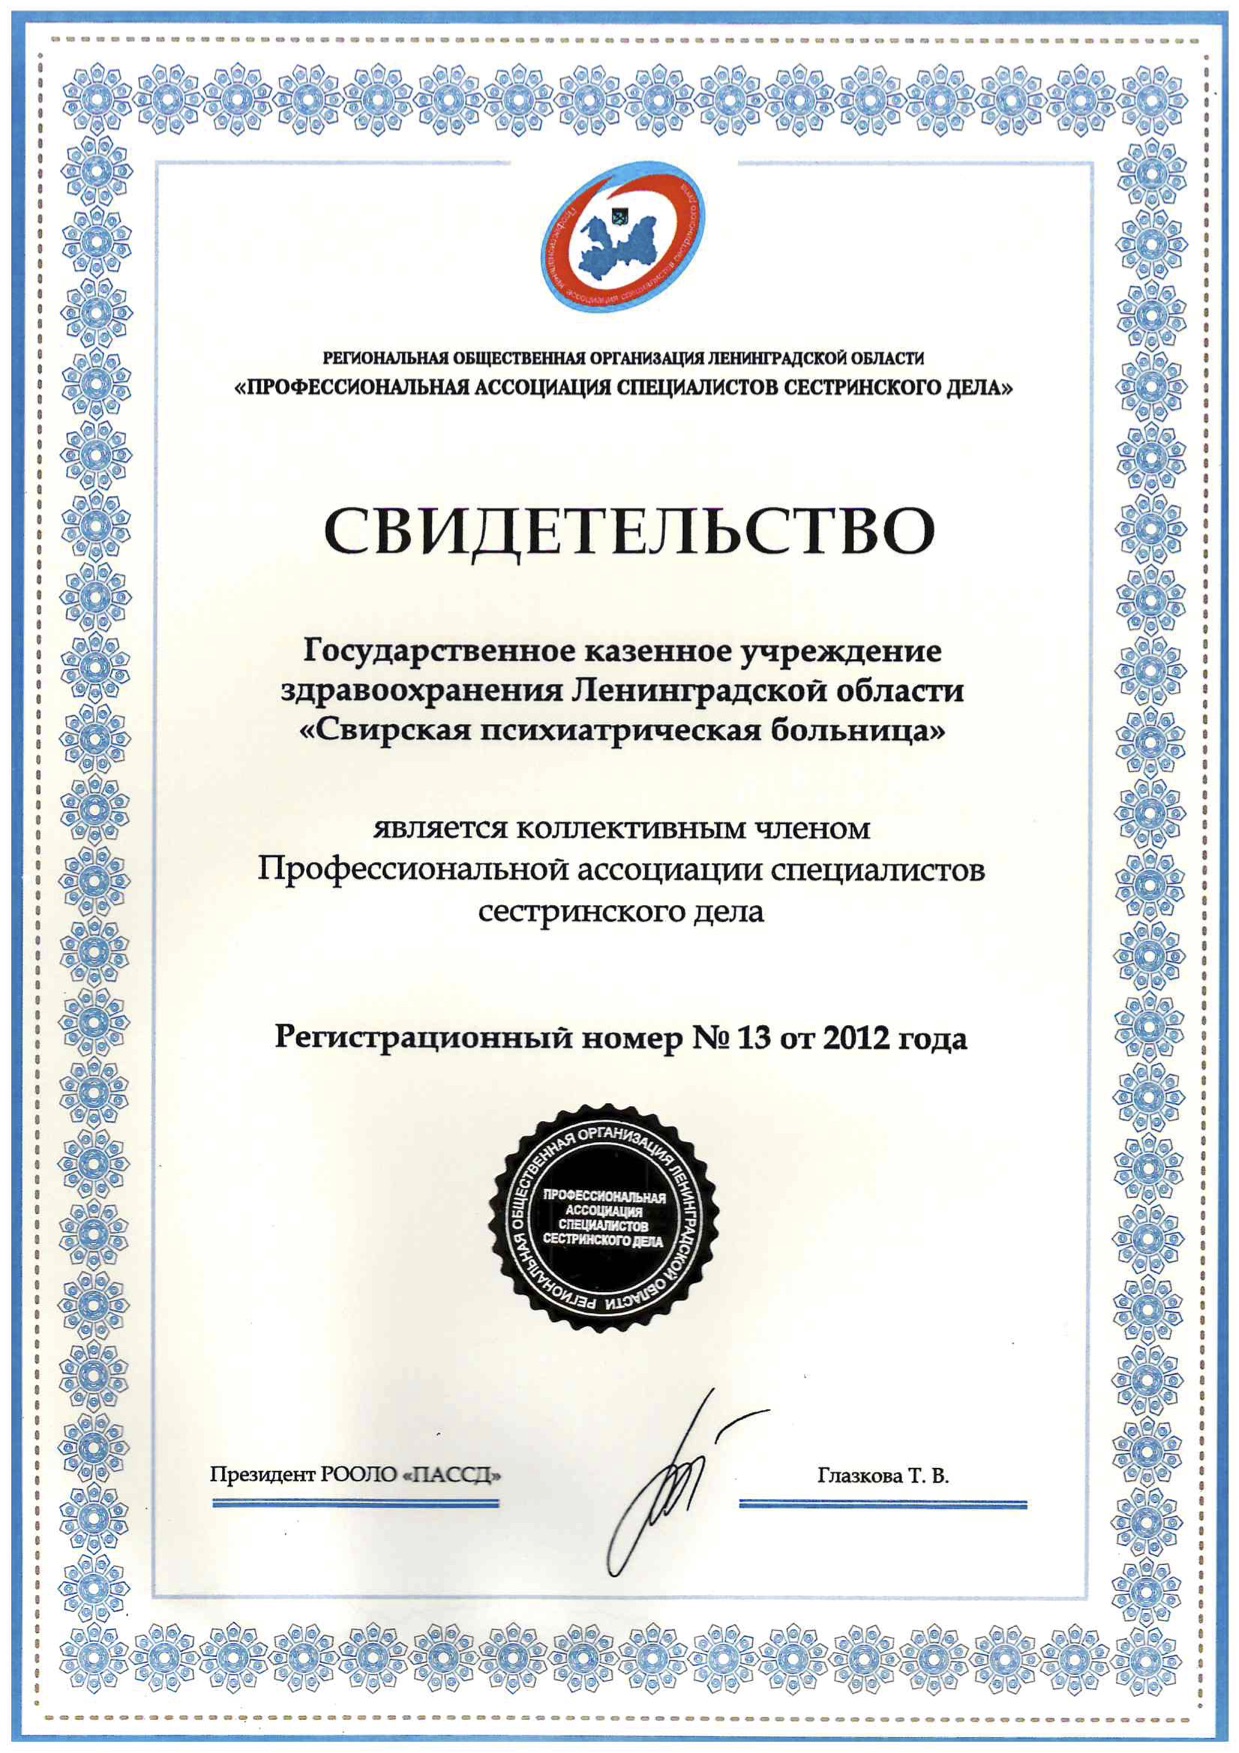 ЛОГКУЗ "Свирская психиатрическая больница": сертификат